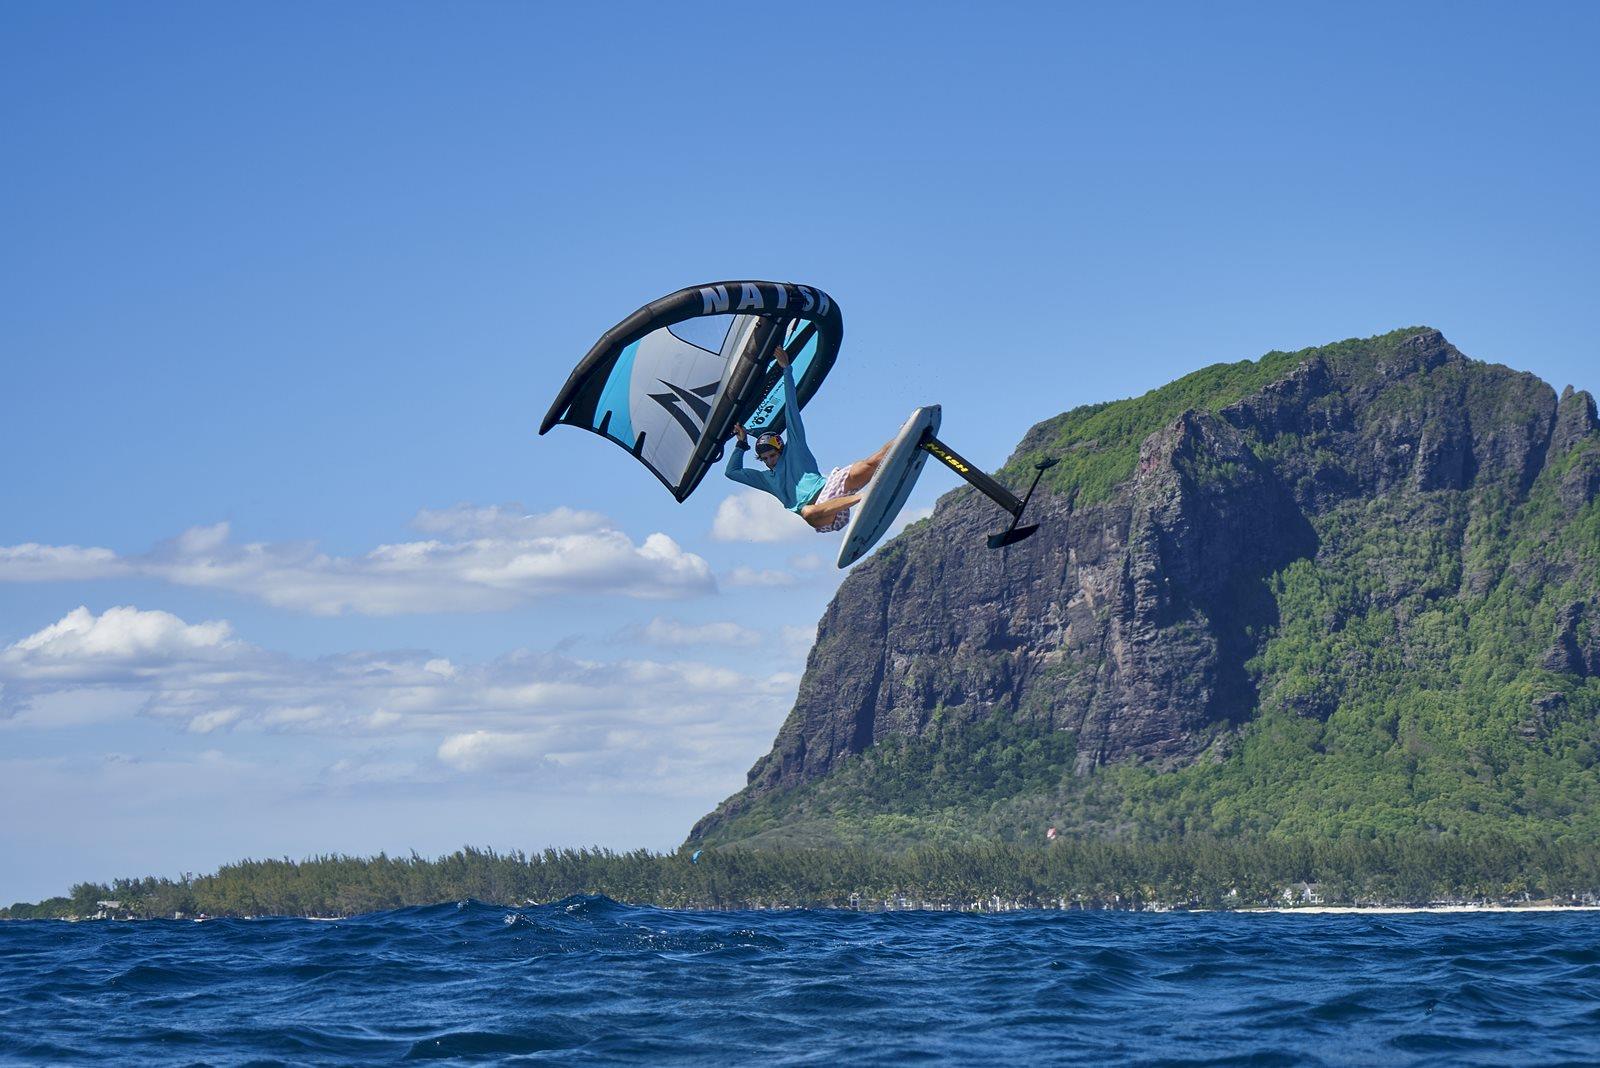 Nový Wing-surfer Naish MK4 - jumping